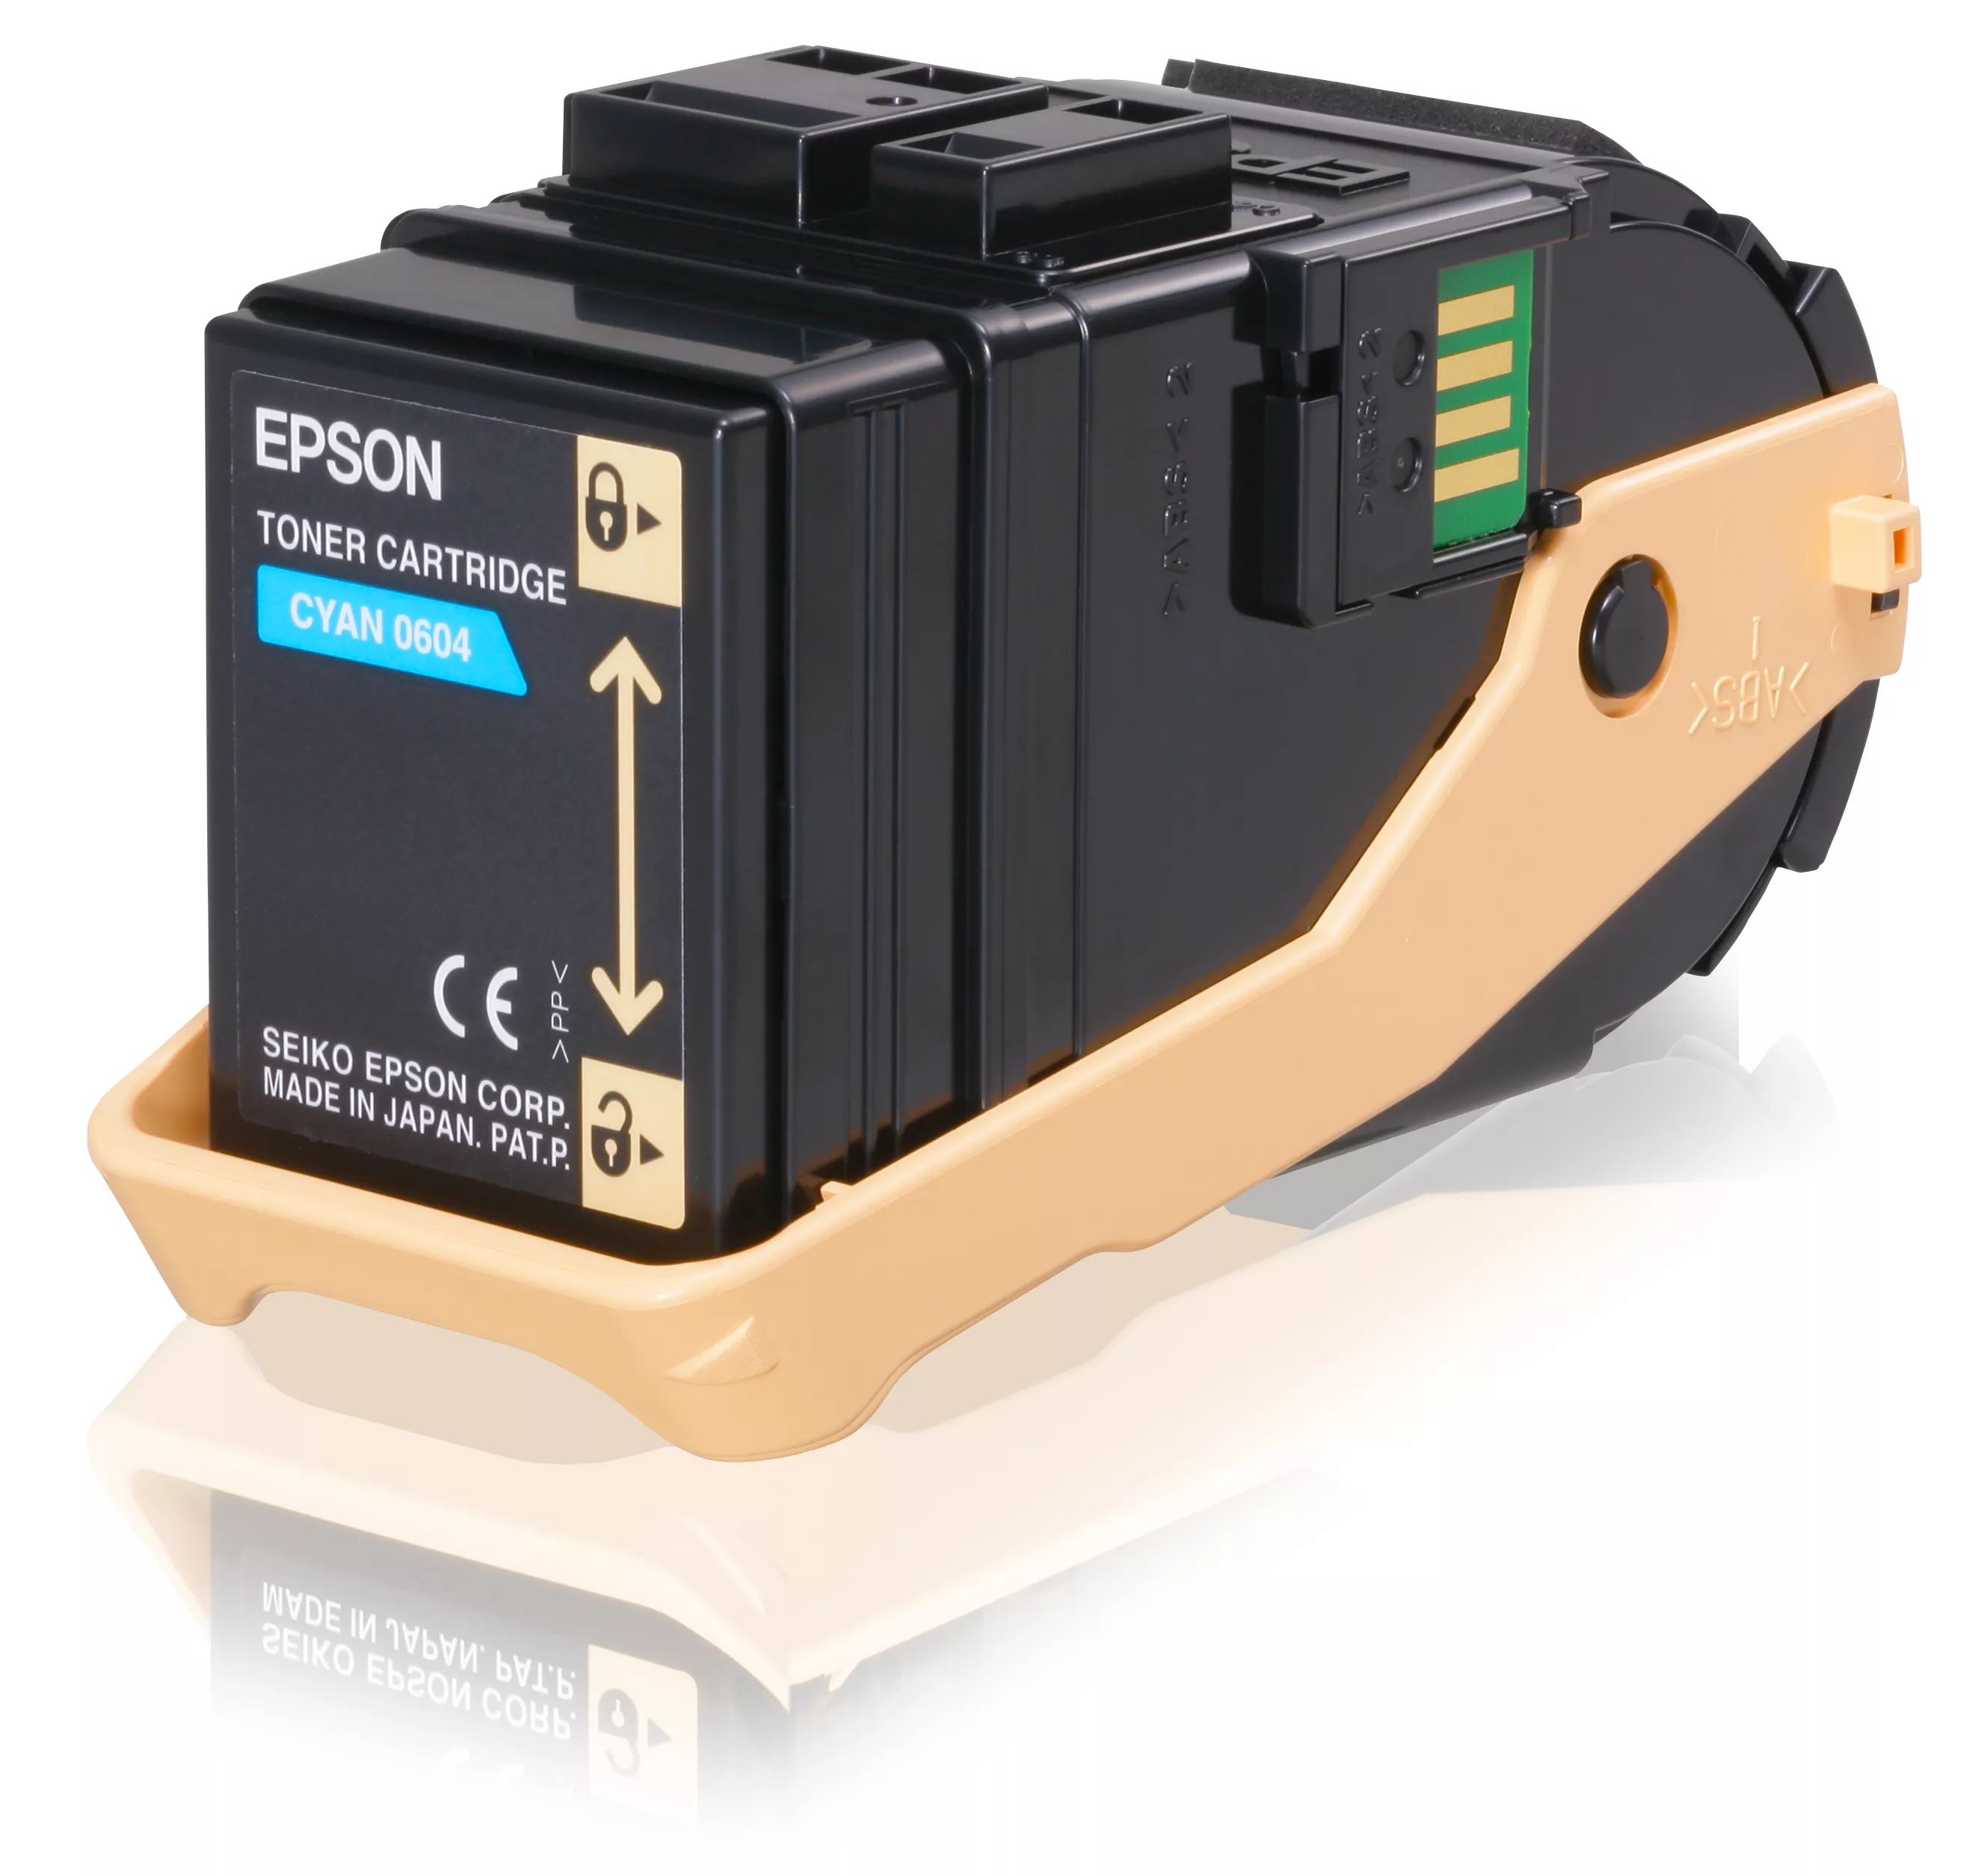 Achat EPSON AL-C9300N cartouche de toner cyan capacité et autres produits de la marque Epson